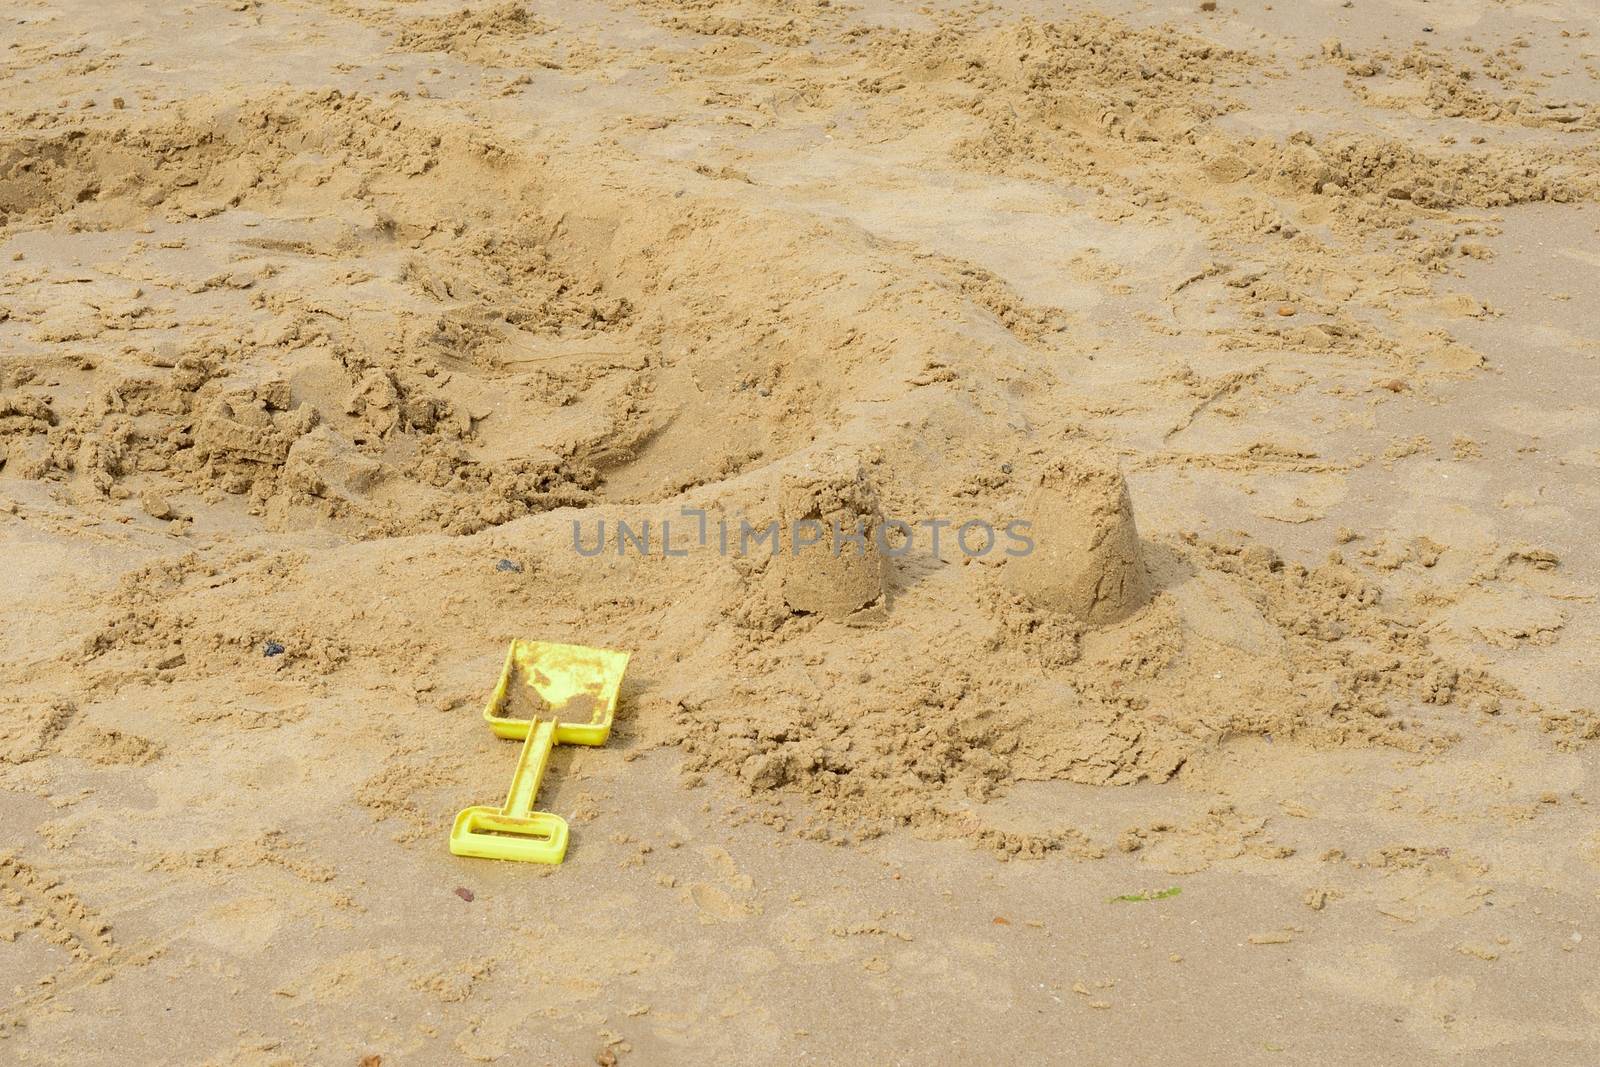 Kids spade by broken down sandcastle